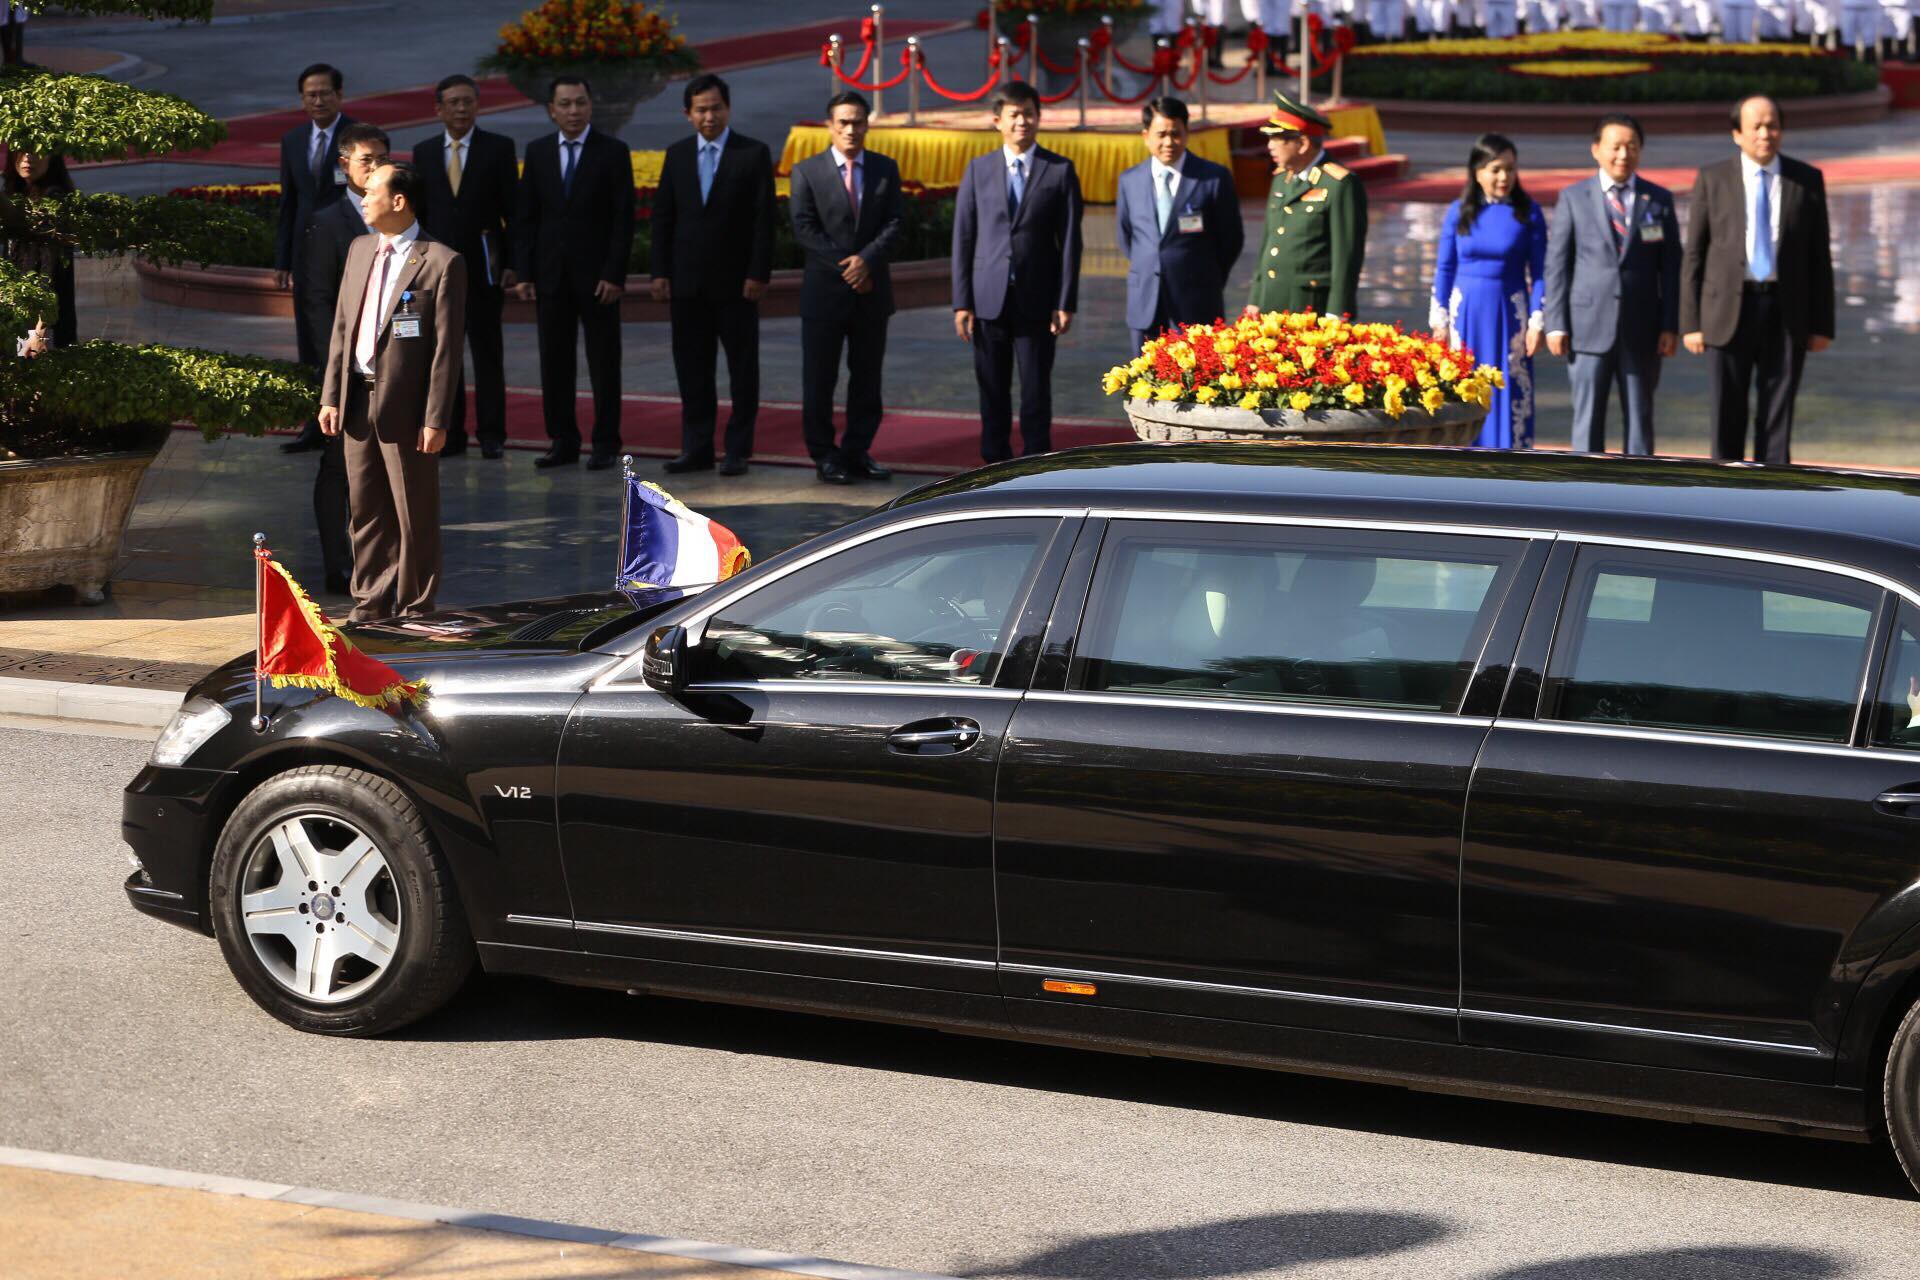 Thủ tướng Pháp bắt đầu thăm chính thức Việt Nam - Ảnh 1.